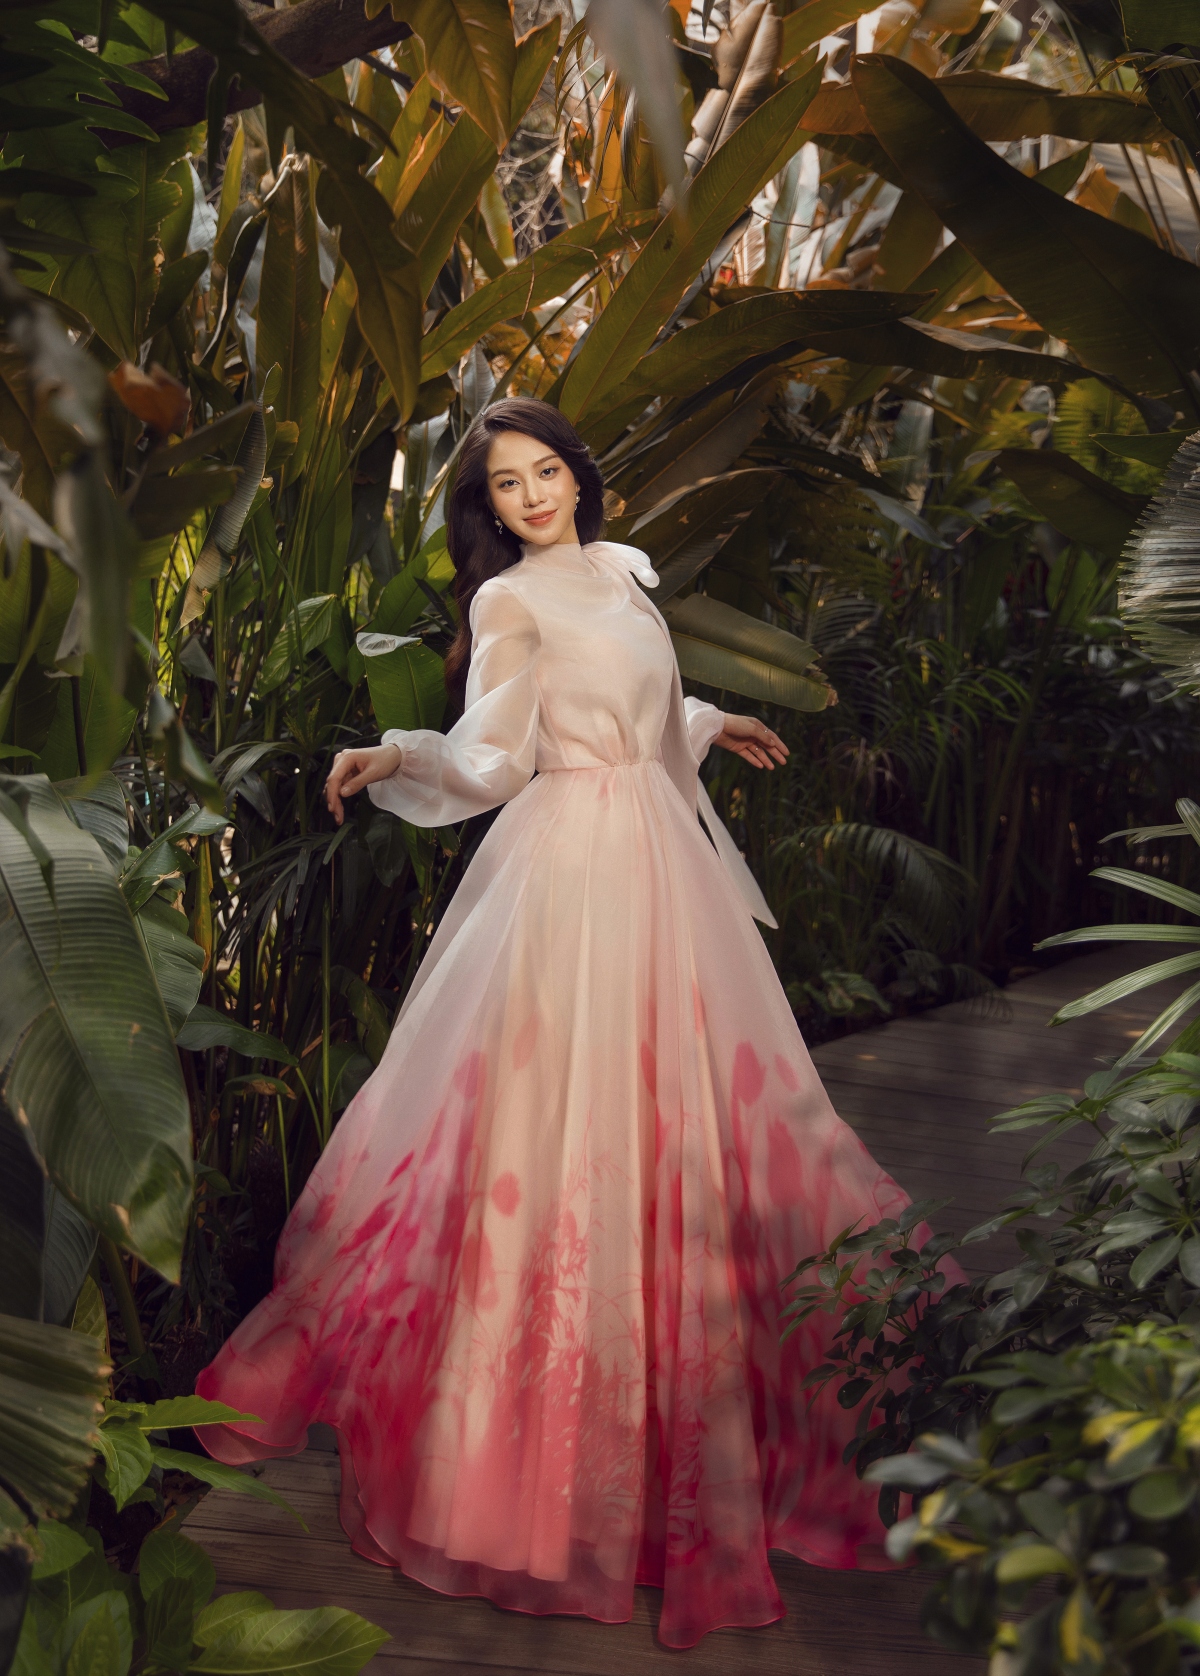 Hoa hậu Thanh Thủy đẹp gợi cảm trong bộ ảnh mới - Ảnh 2.